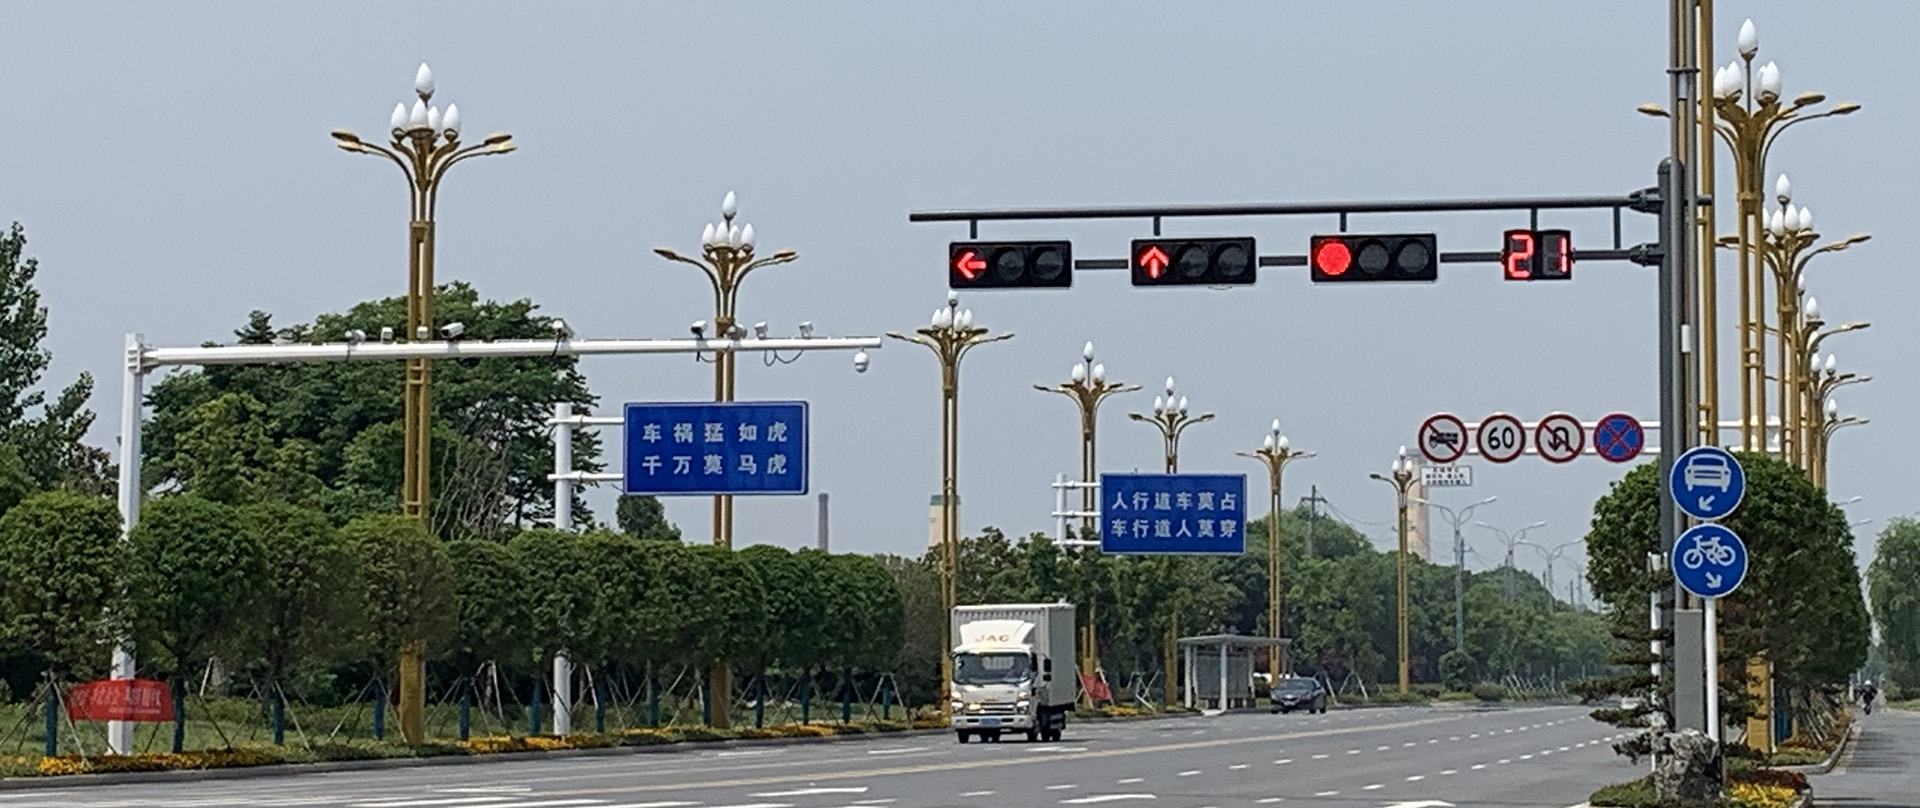 红绿灯杆，信号灯，交通信号灯，信号灯杆